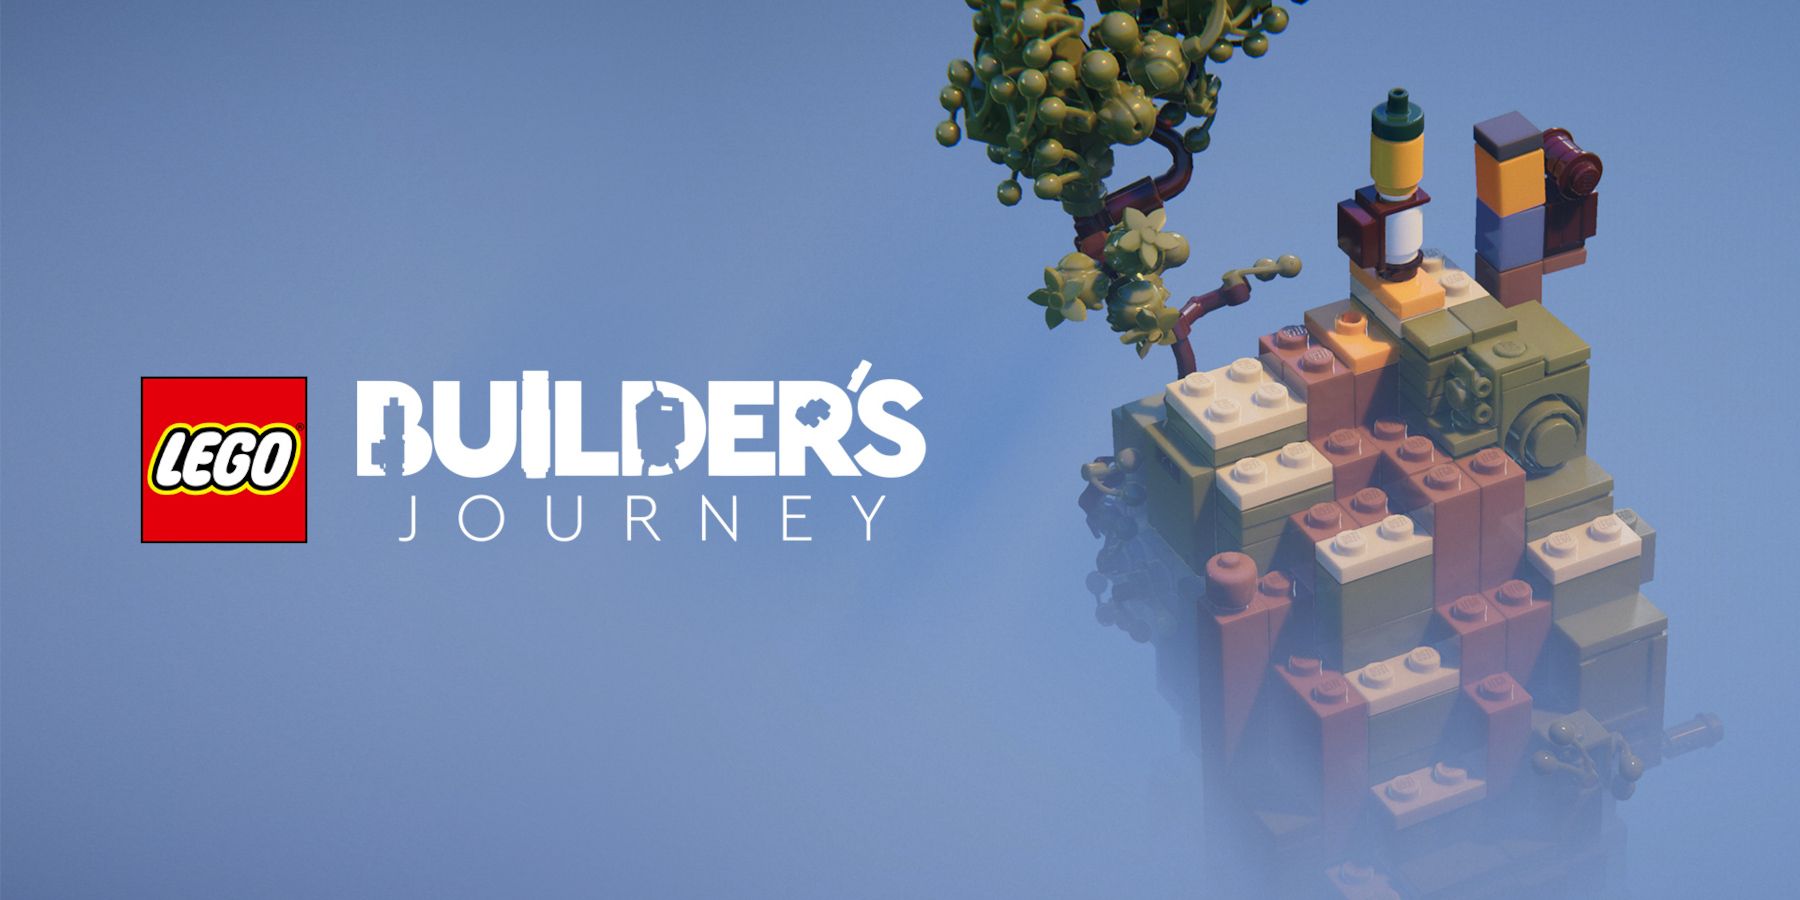 Arte da jornada do LEGO Builder representando dois pequenos personagens no topo de uma vinheta de um caminho construído com peças.